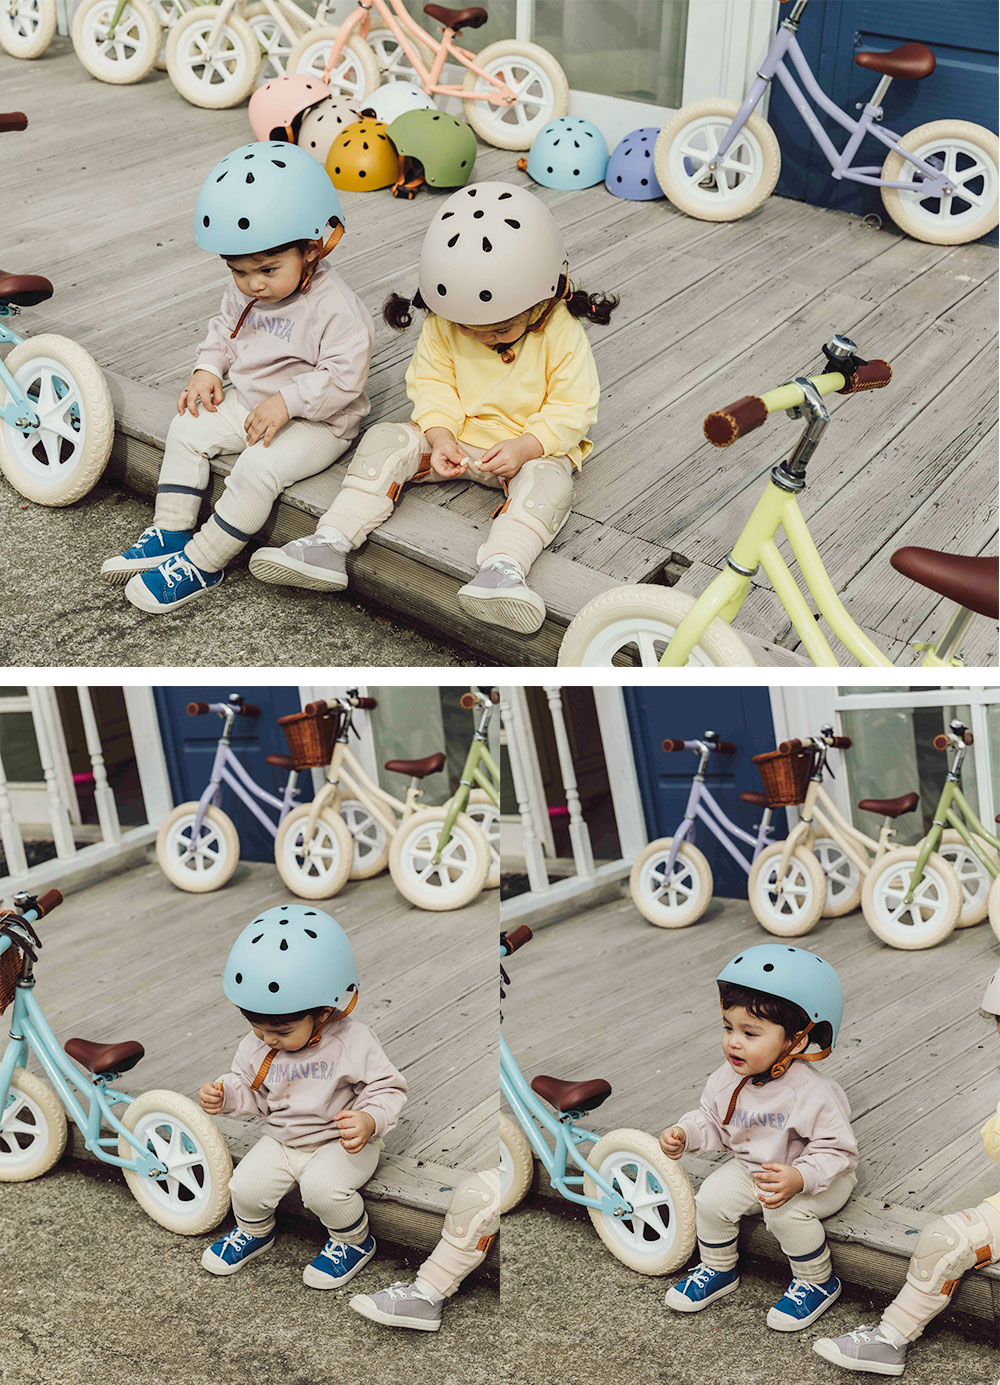 Momnlittle キッズヘルメット 子供用ヘルメット 子供 ヘルメット 自転車 キッズバイク キックボード スケボー キッズ 幼児 ダイヤル 3歳 4歳 5歳 6歳 7歳 おしゃれ シンプル 幼稚園 小学生 男の子 女の子 - 9